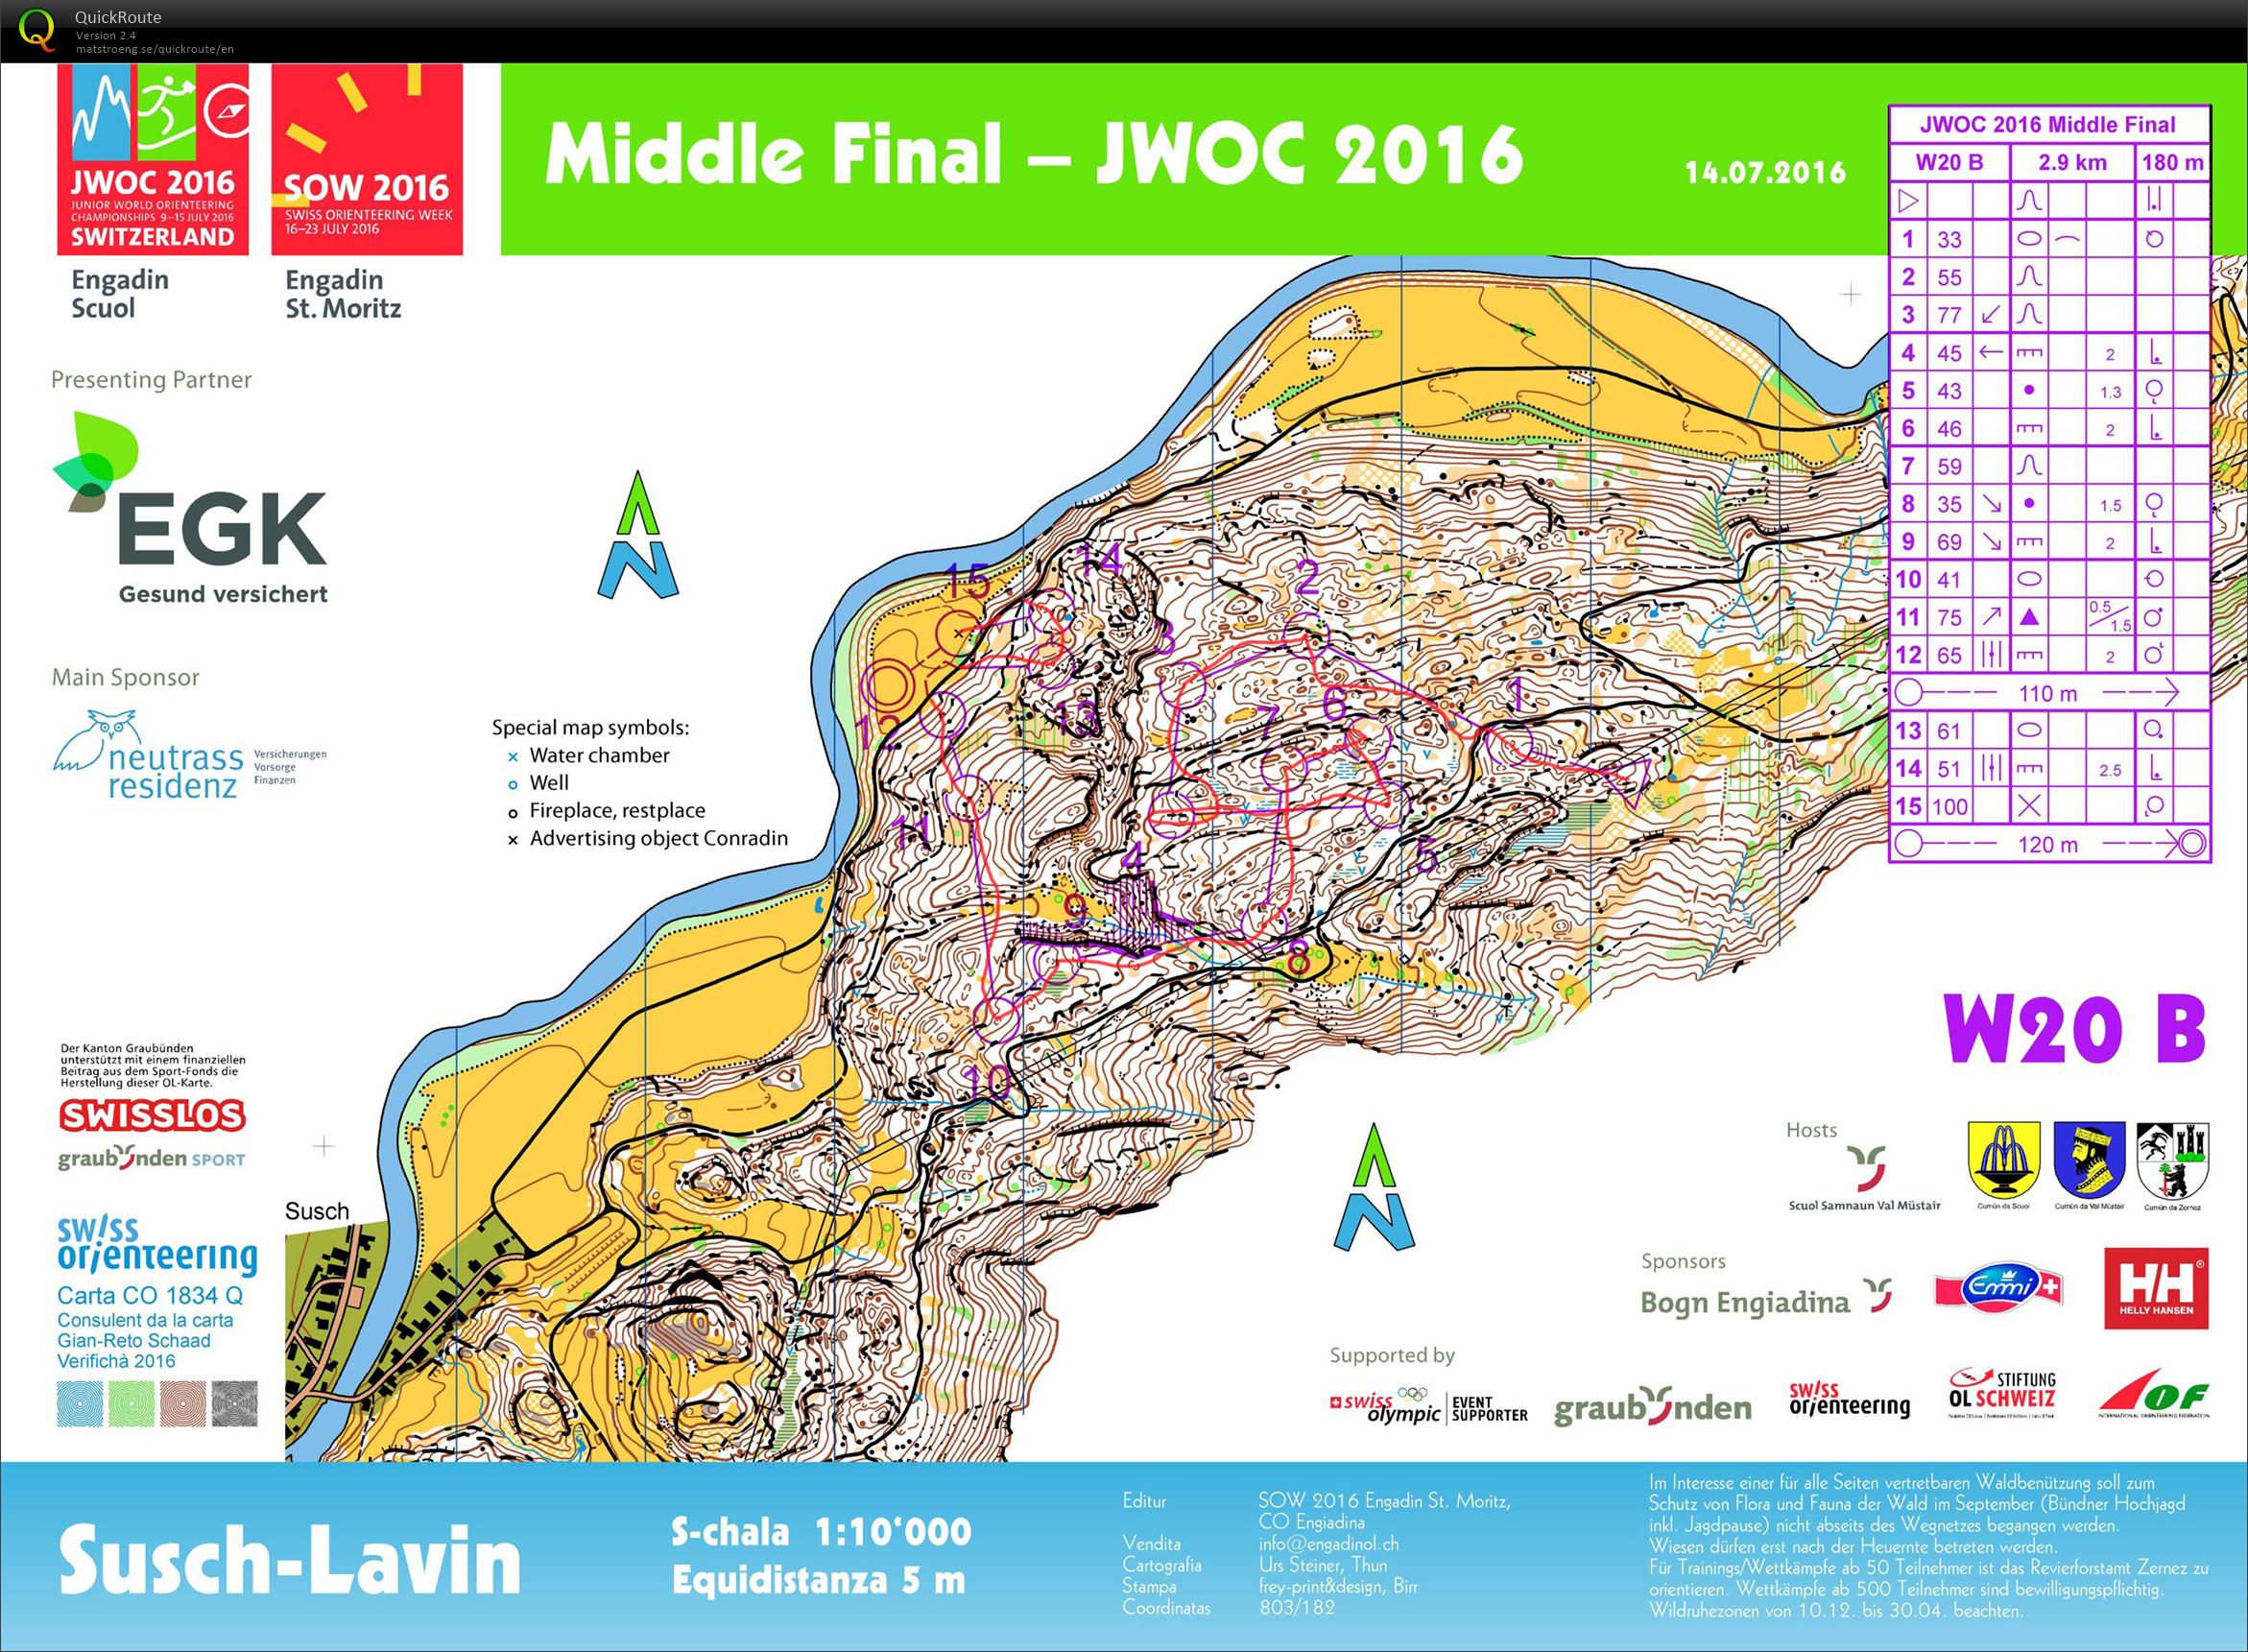 JWOC 2016 Middle B Final (14/07/2016)